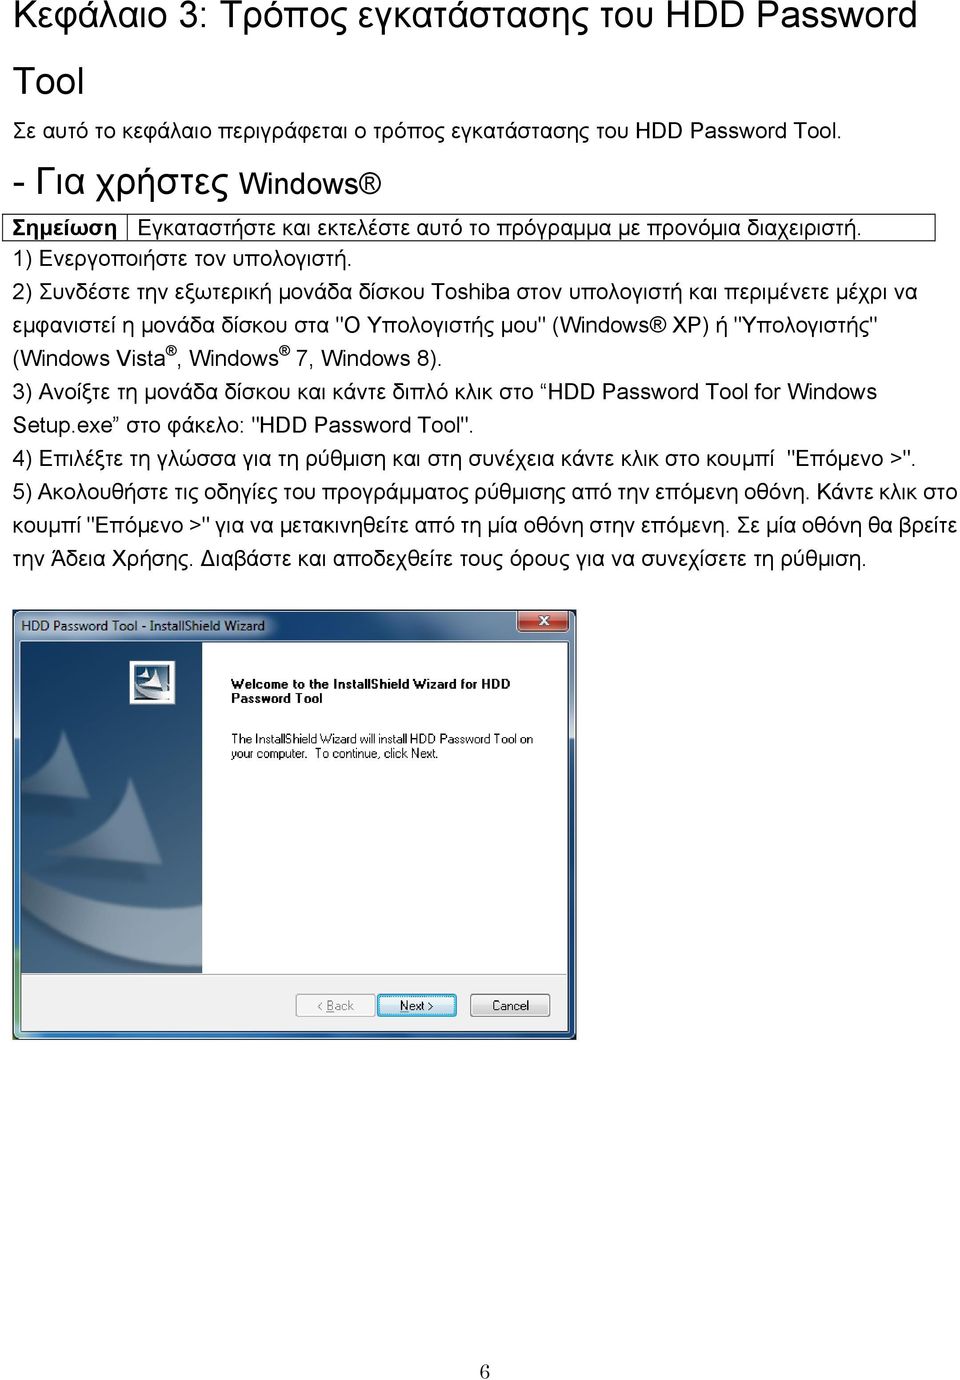 2) Συνδέστε την εξωτερική μονάδα δίσκου Toshiba στον υπολογιστή και περιμένετε μέχρι να εμφανιστεί η μονάδα δίσκου στα "Ο Υπολογιστής μου" (Windows XP) ή "Υπολογιστής" (Windows Vista, Windows 7,